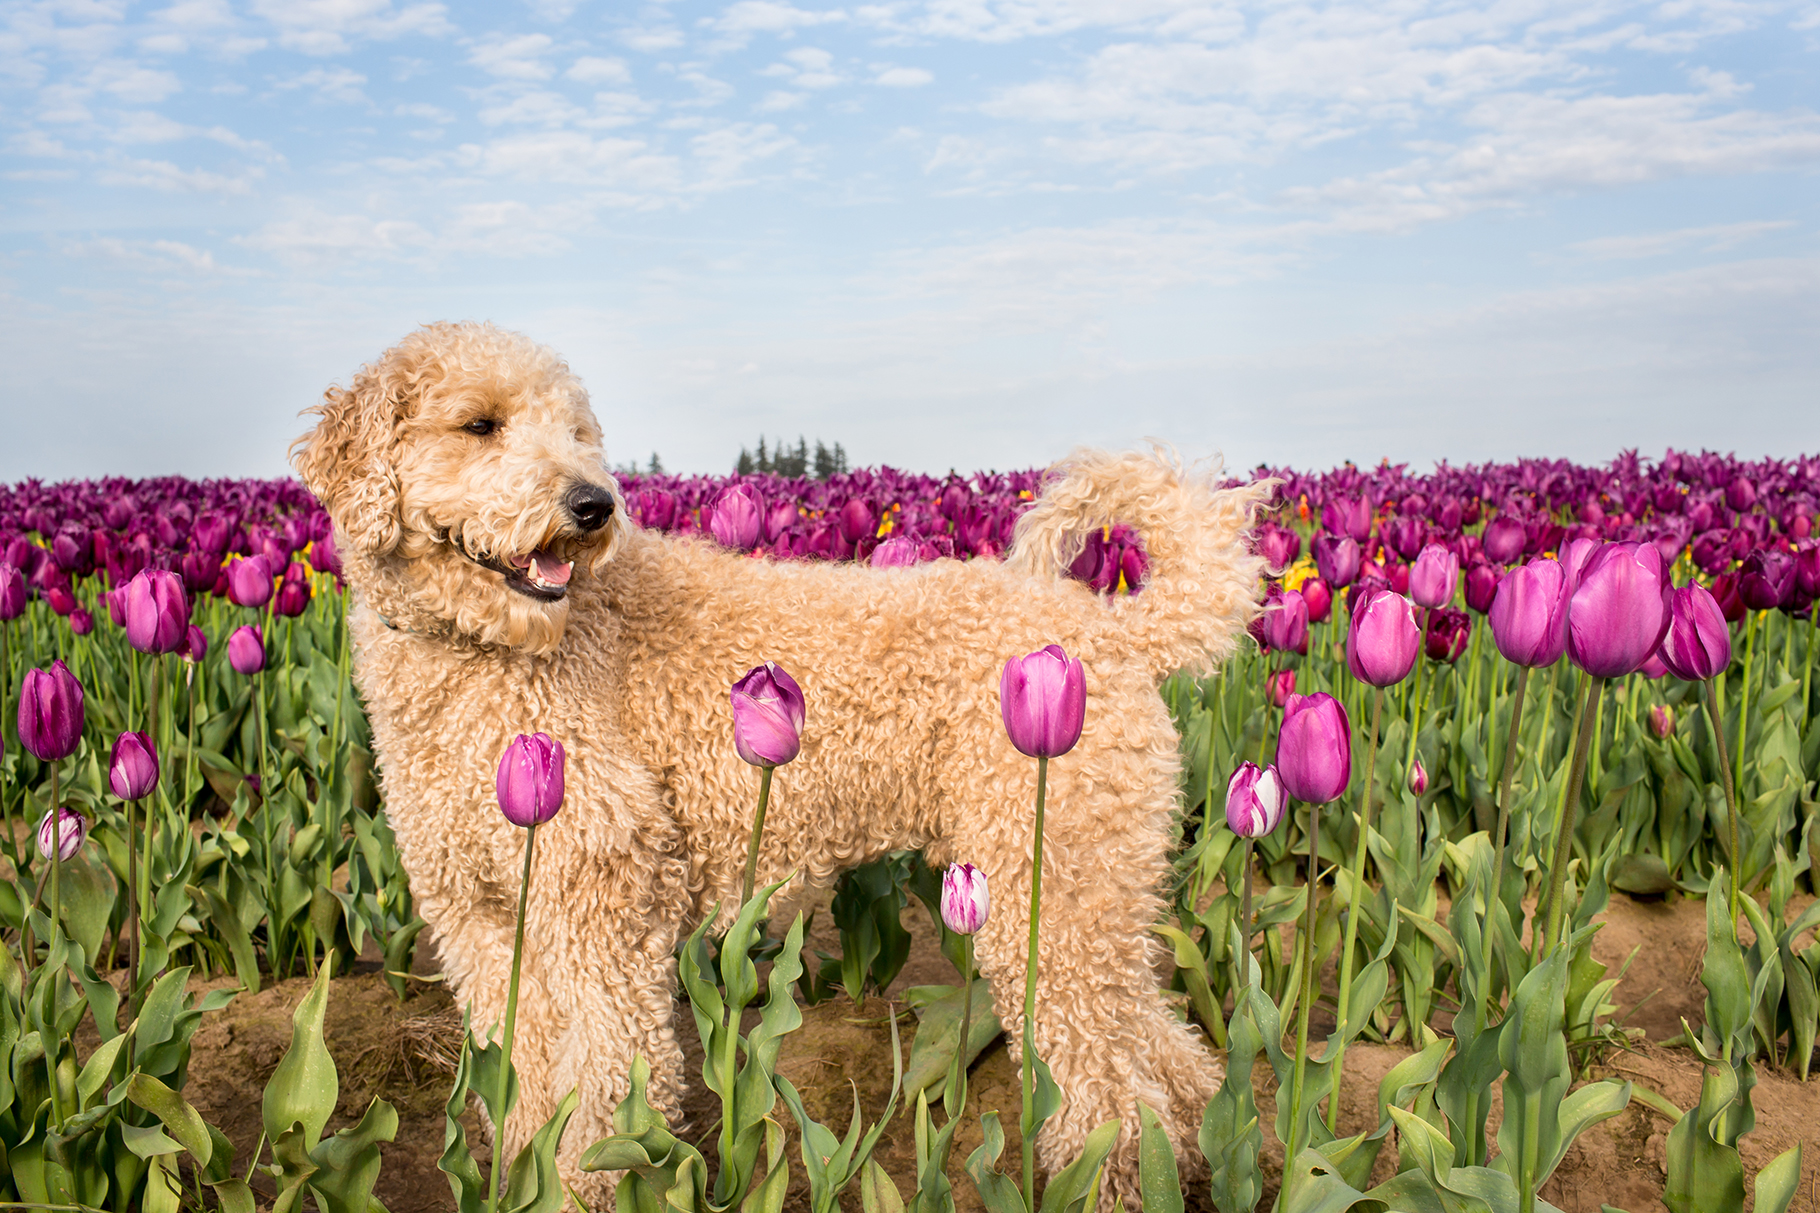 Wooden Shoe Tulip Farm dog photos